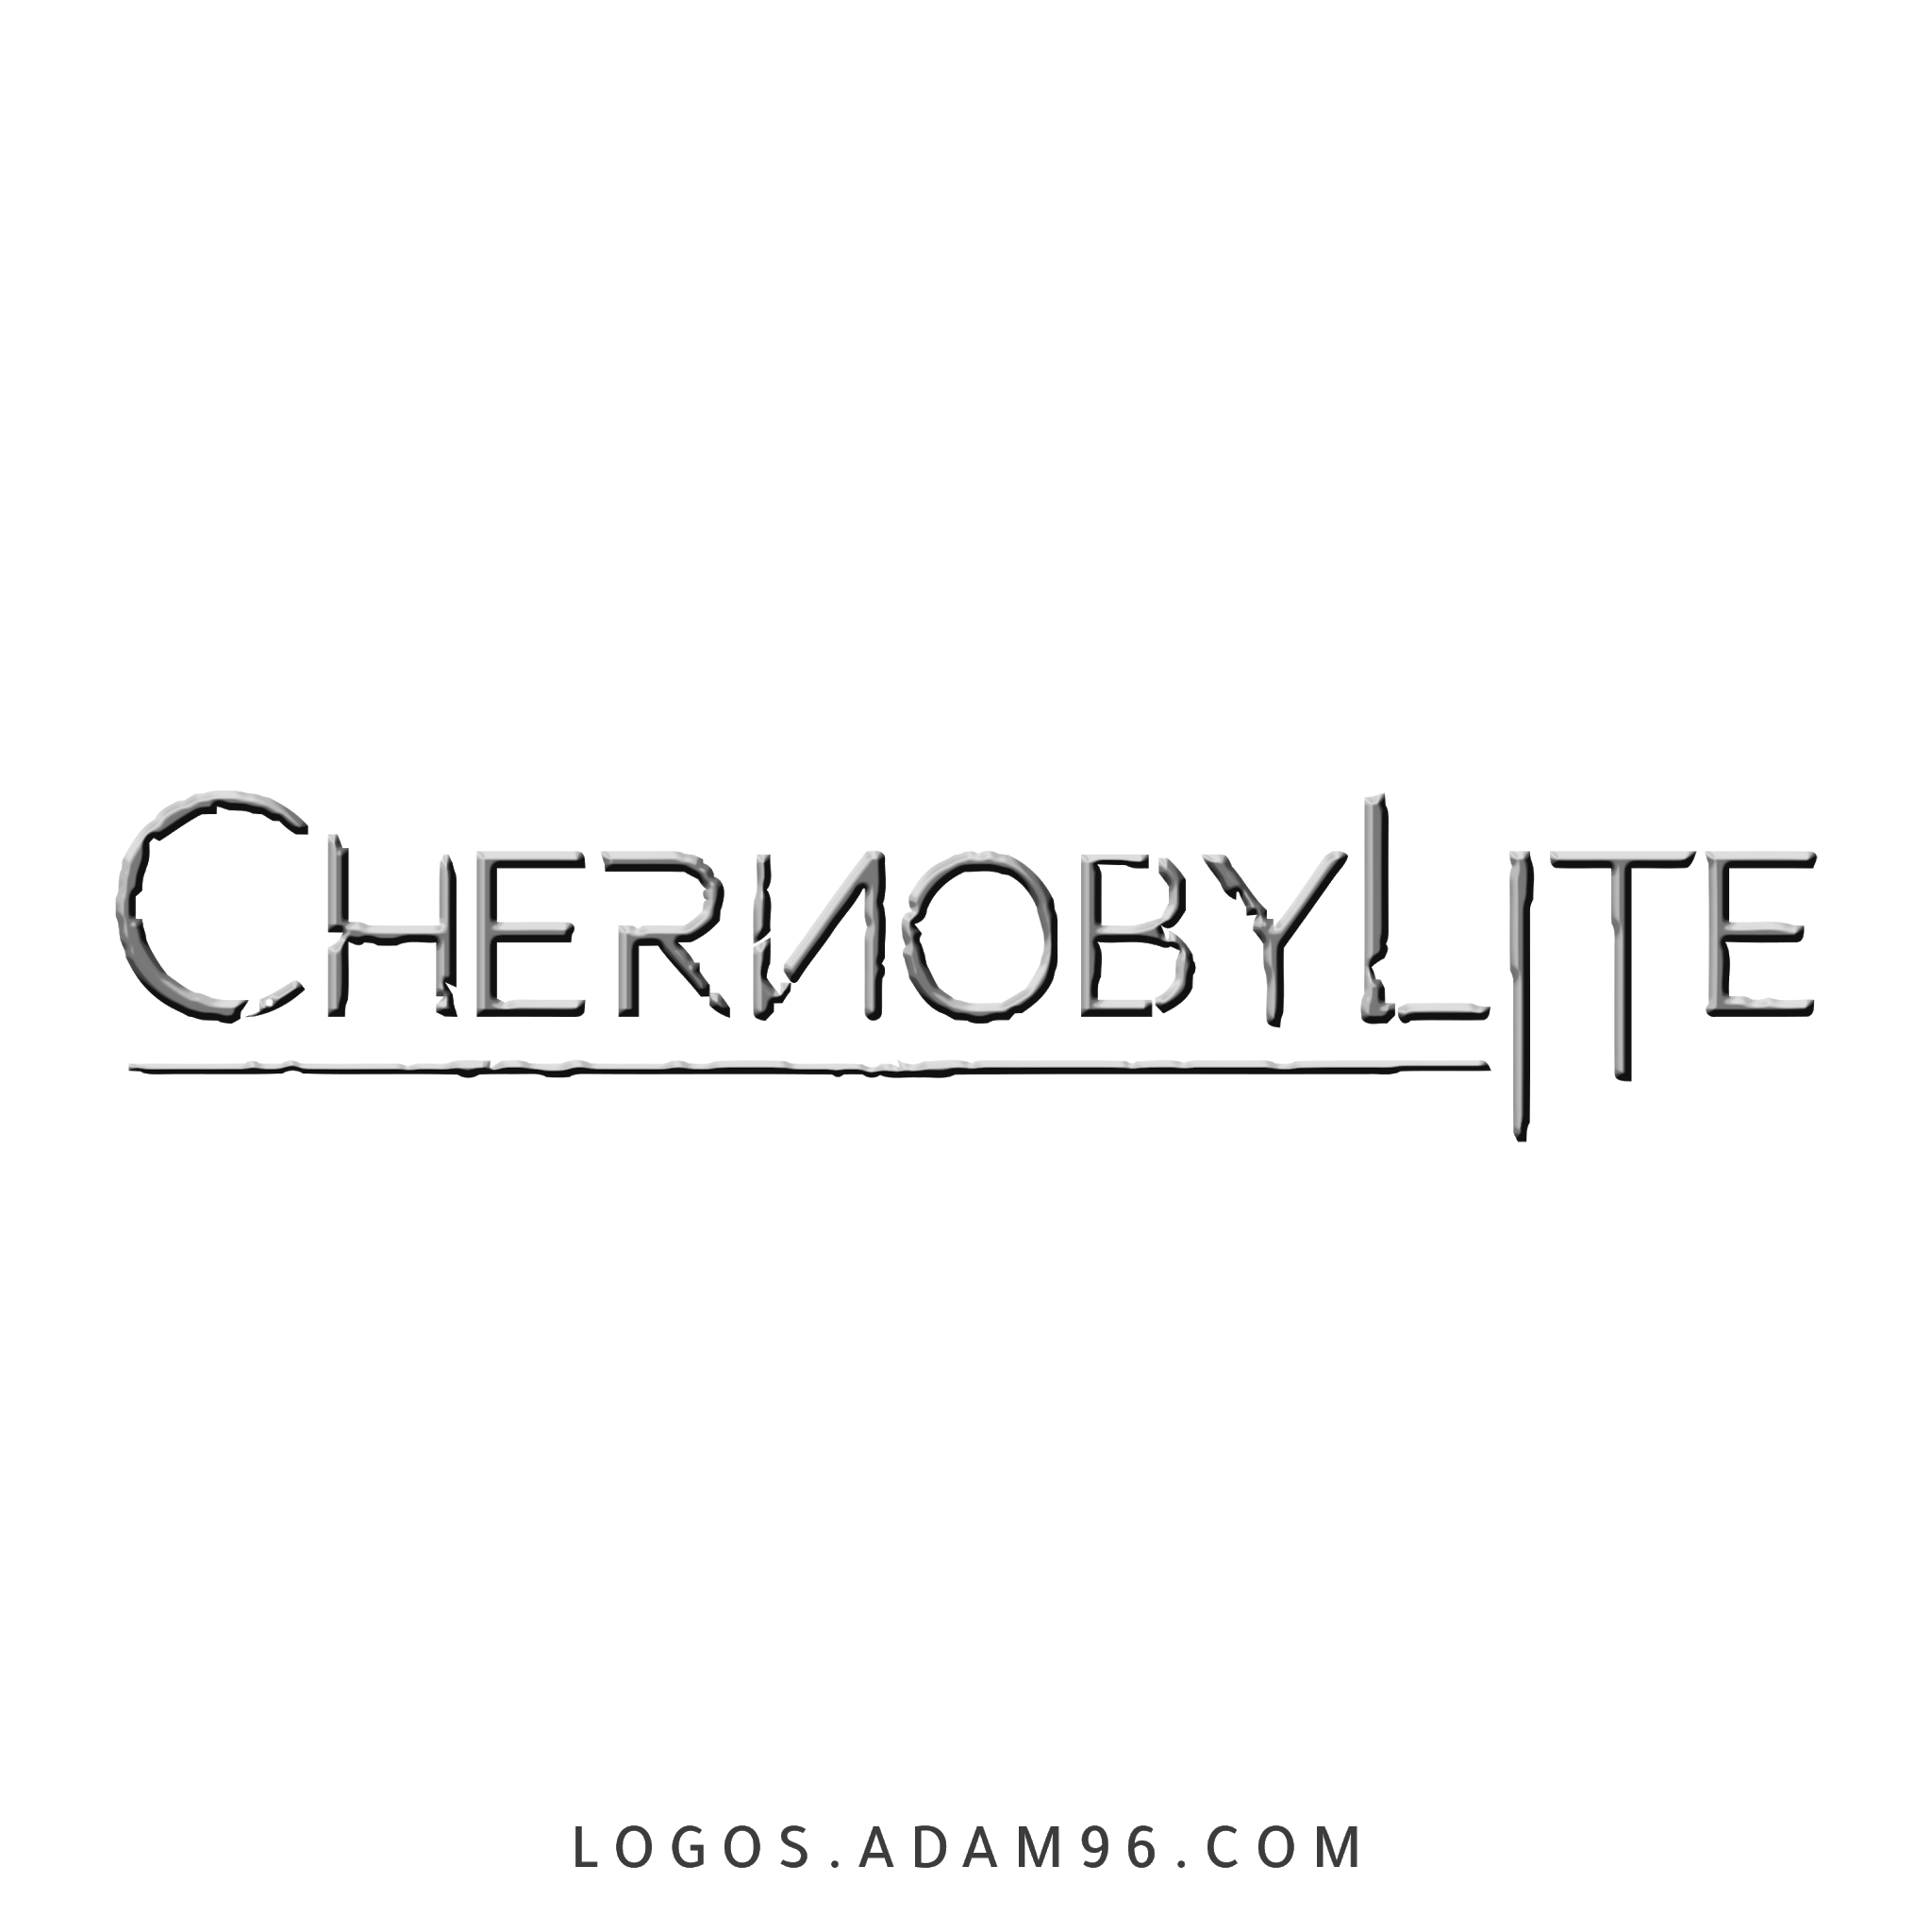 Download CHERNOBYLITE Logo Vector PNG Original Logo Big Size